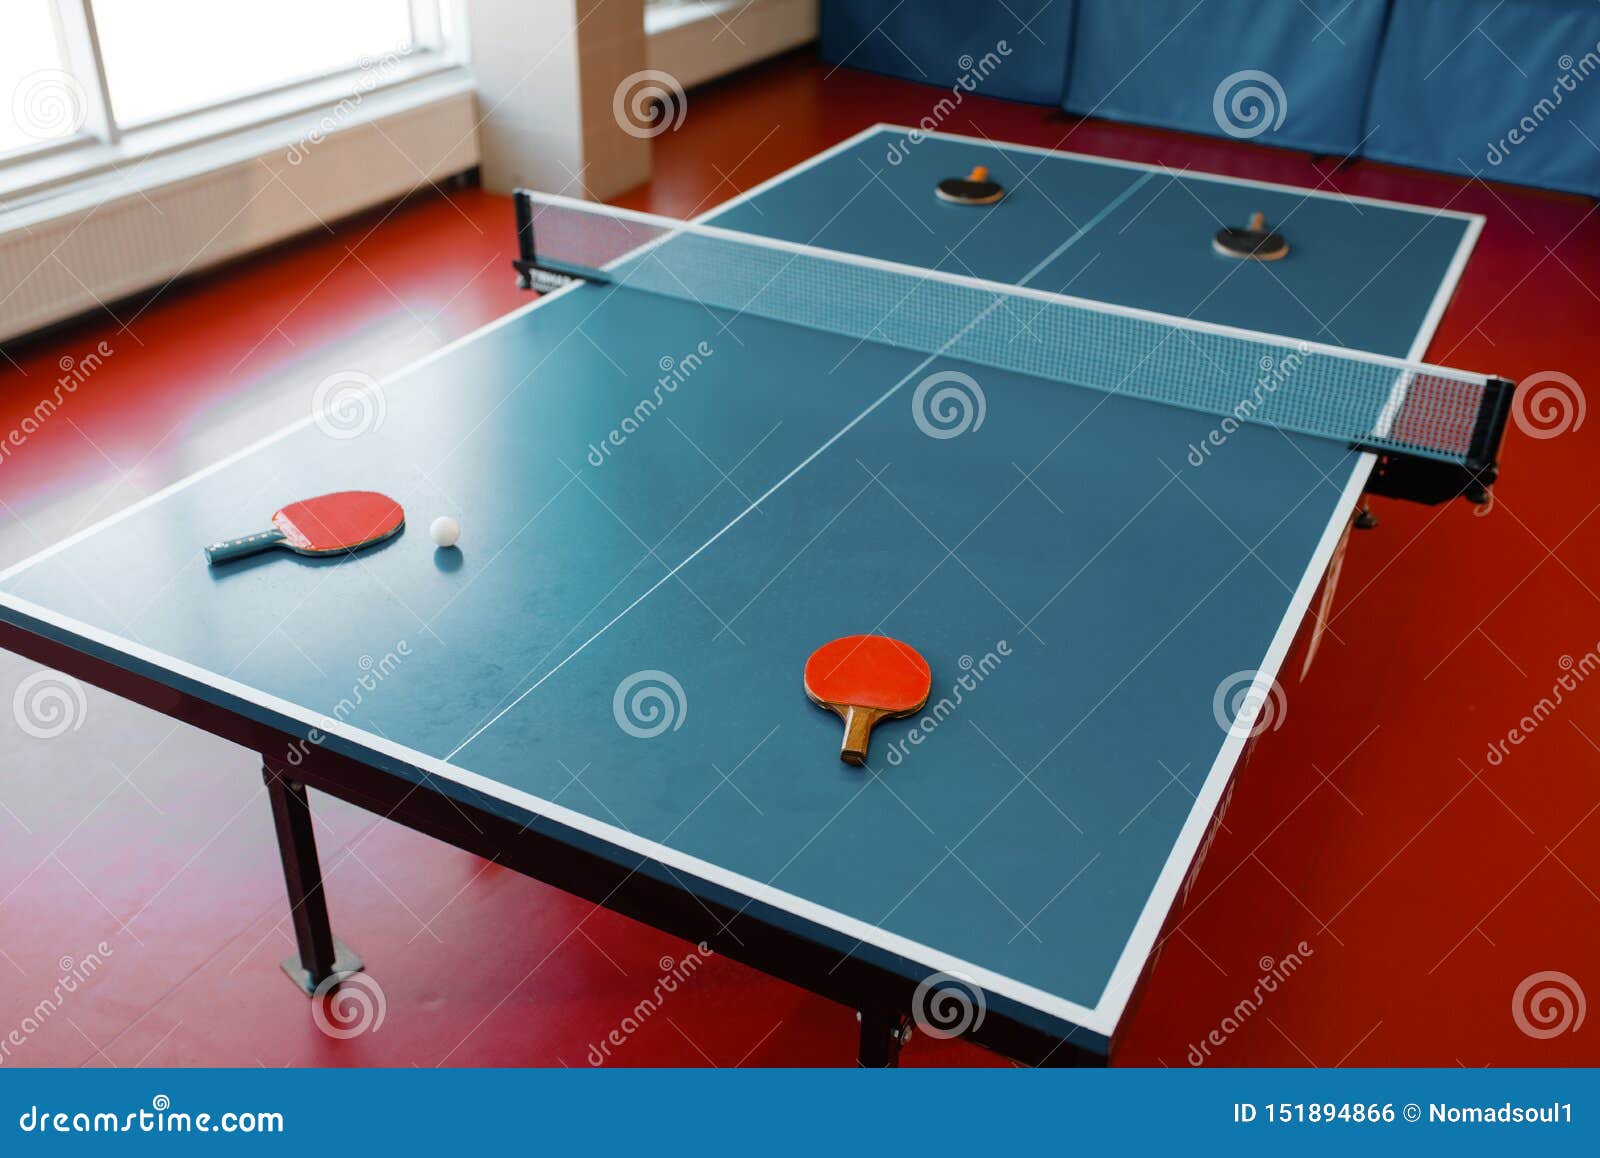 Estafas Ping-pong En La Mesa De Juegos Con La Red, Nadie archivo - Imagen de estante: 151894866